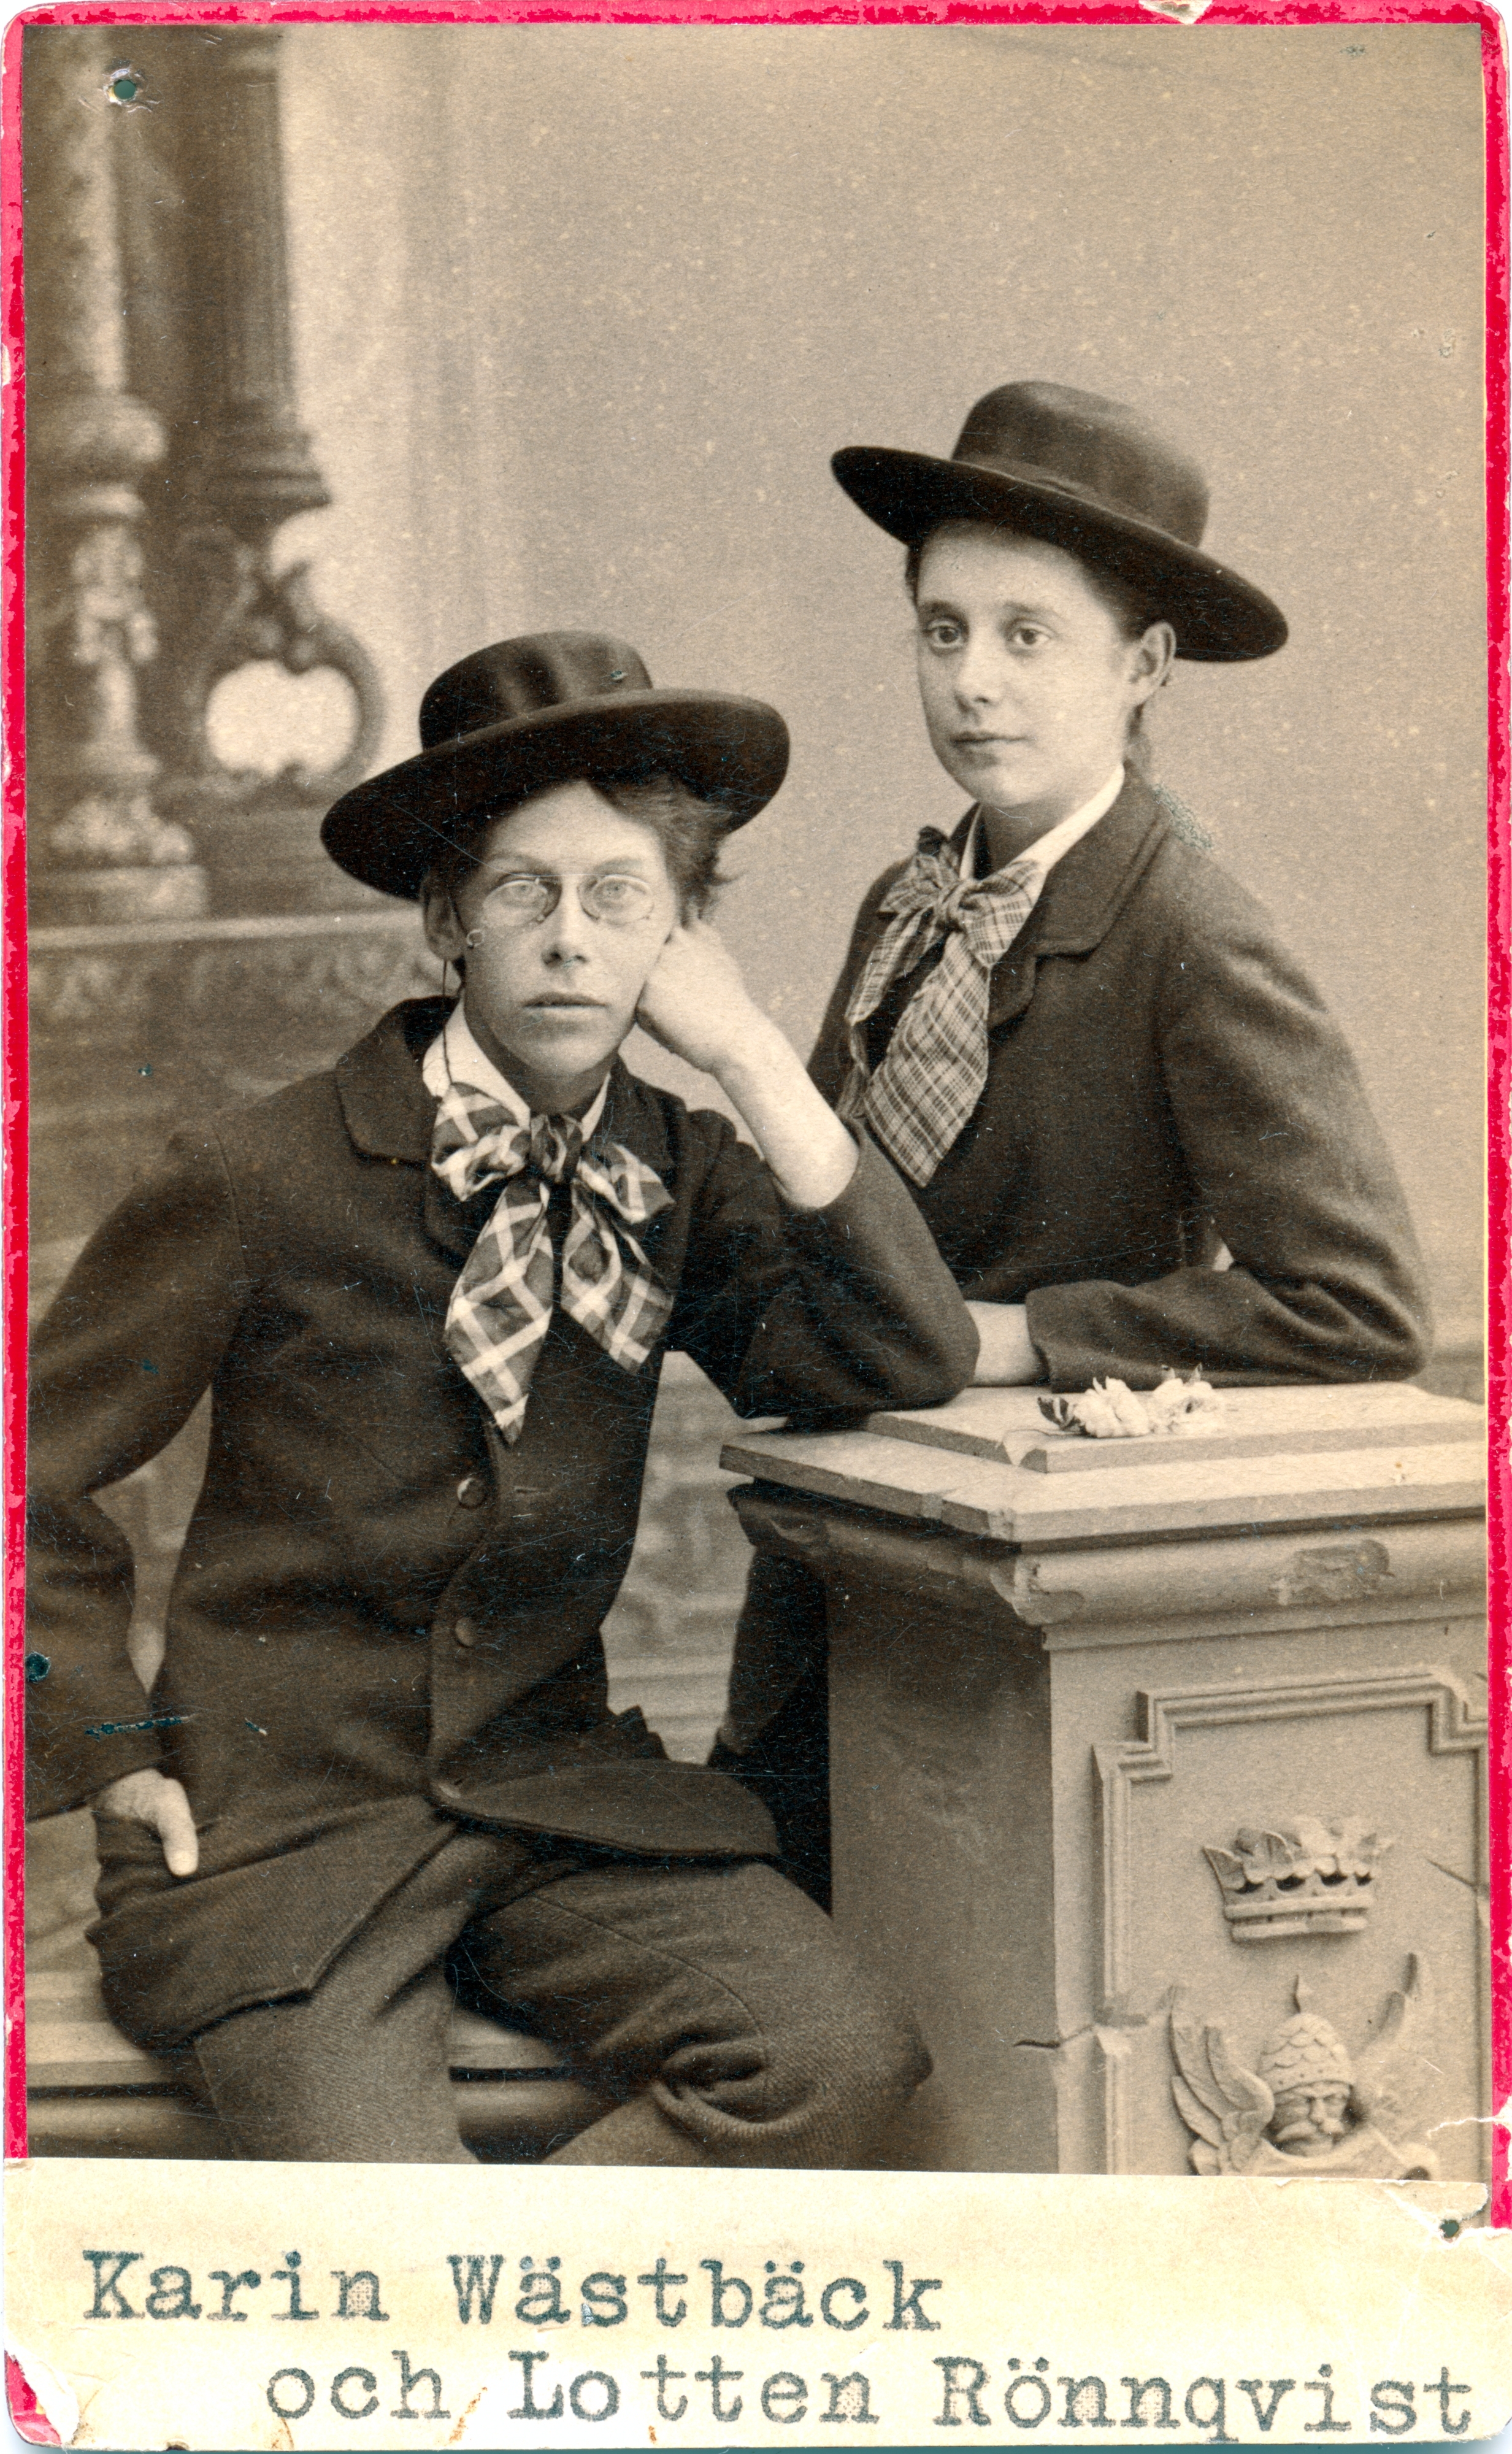 svartvitt foto. Två kvinnor i 20 års åldern. De är klädda i herrkostym och herr hatt med stora mönstrade flugor. En av kvinnorna sitter med kroppen och blicken vänd mot kameran. Den andra står med kroppen och vikten riktad mot vänster.